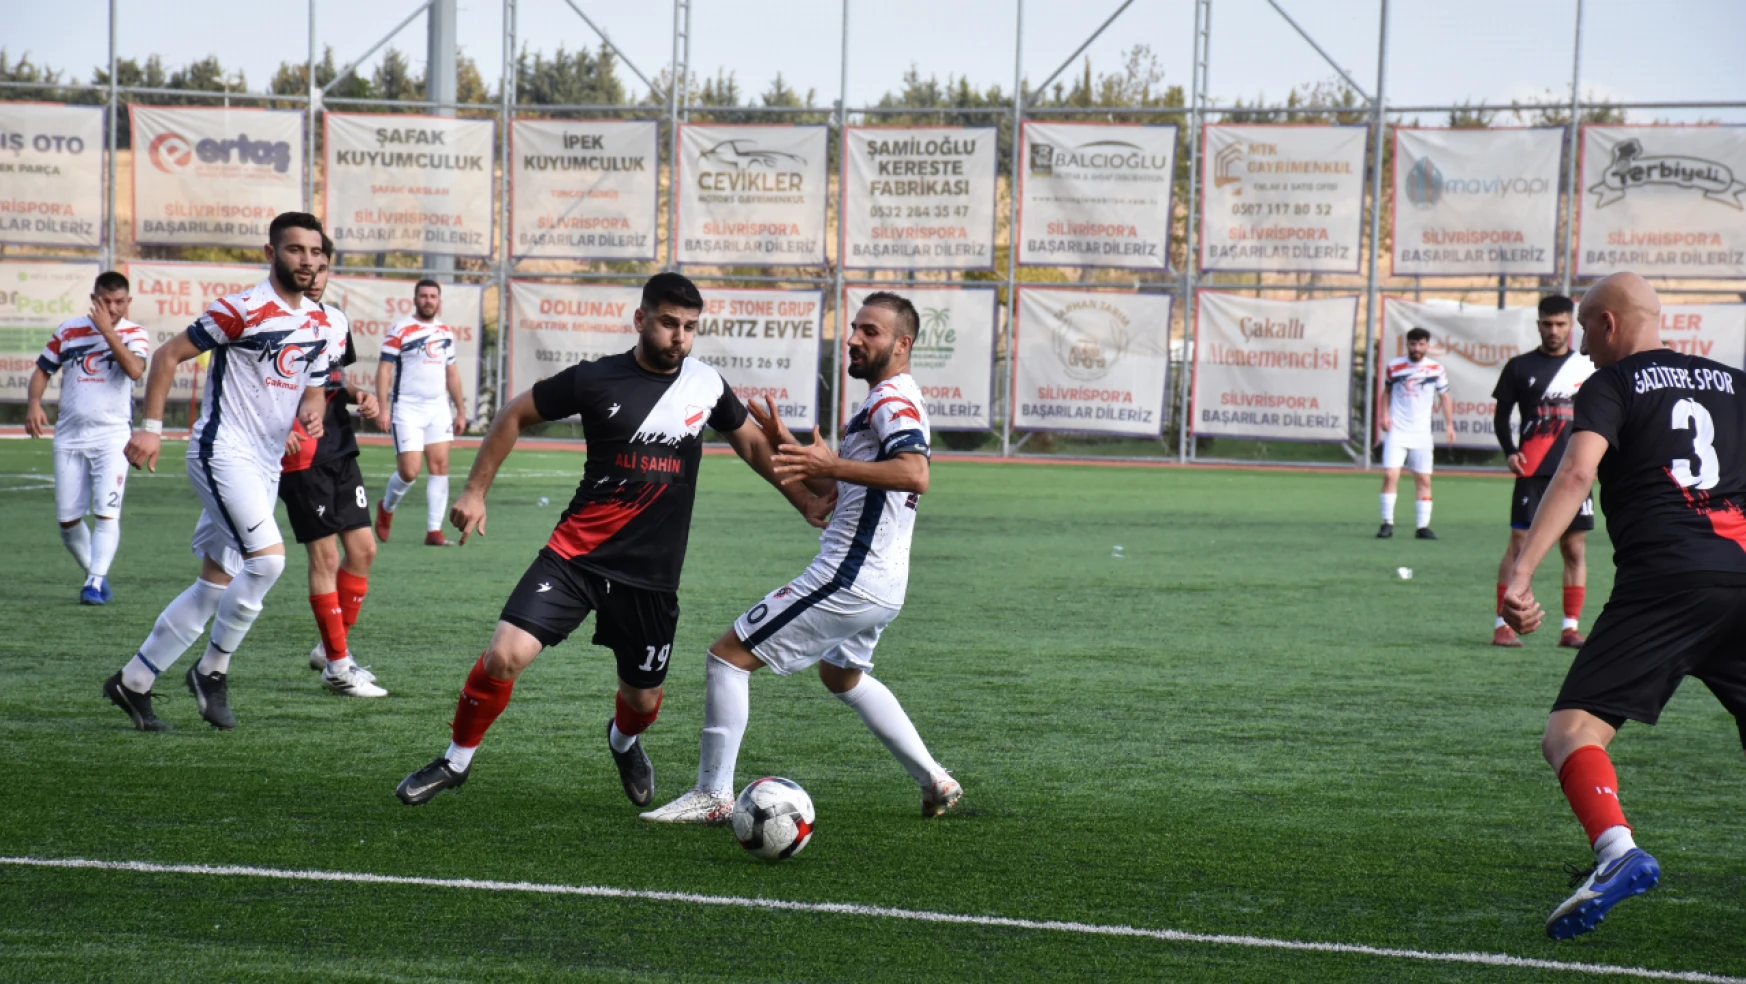 Gazitepe ve Muratbey yenişemedi 1-1